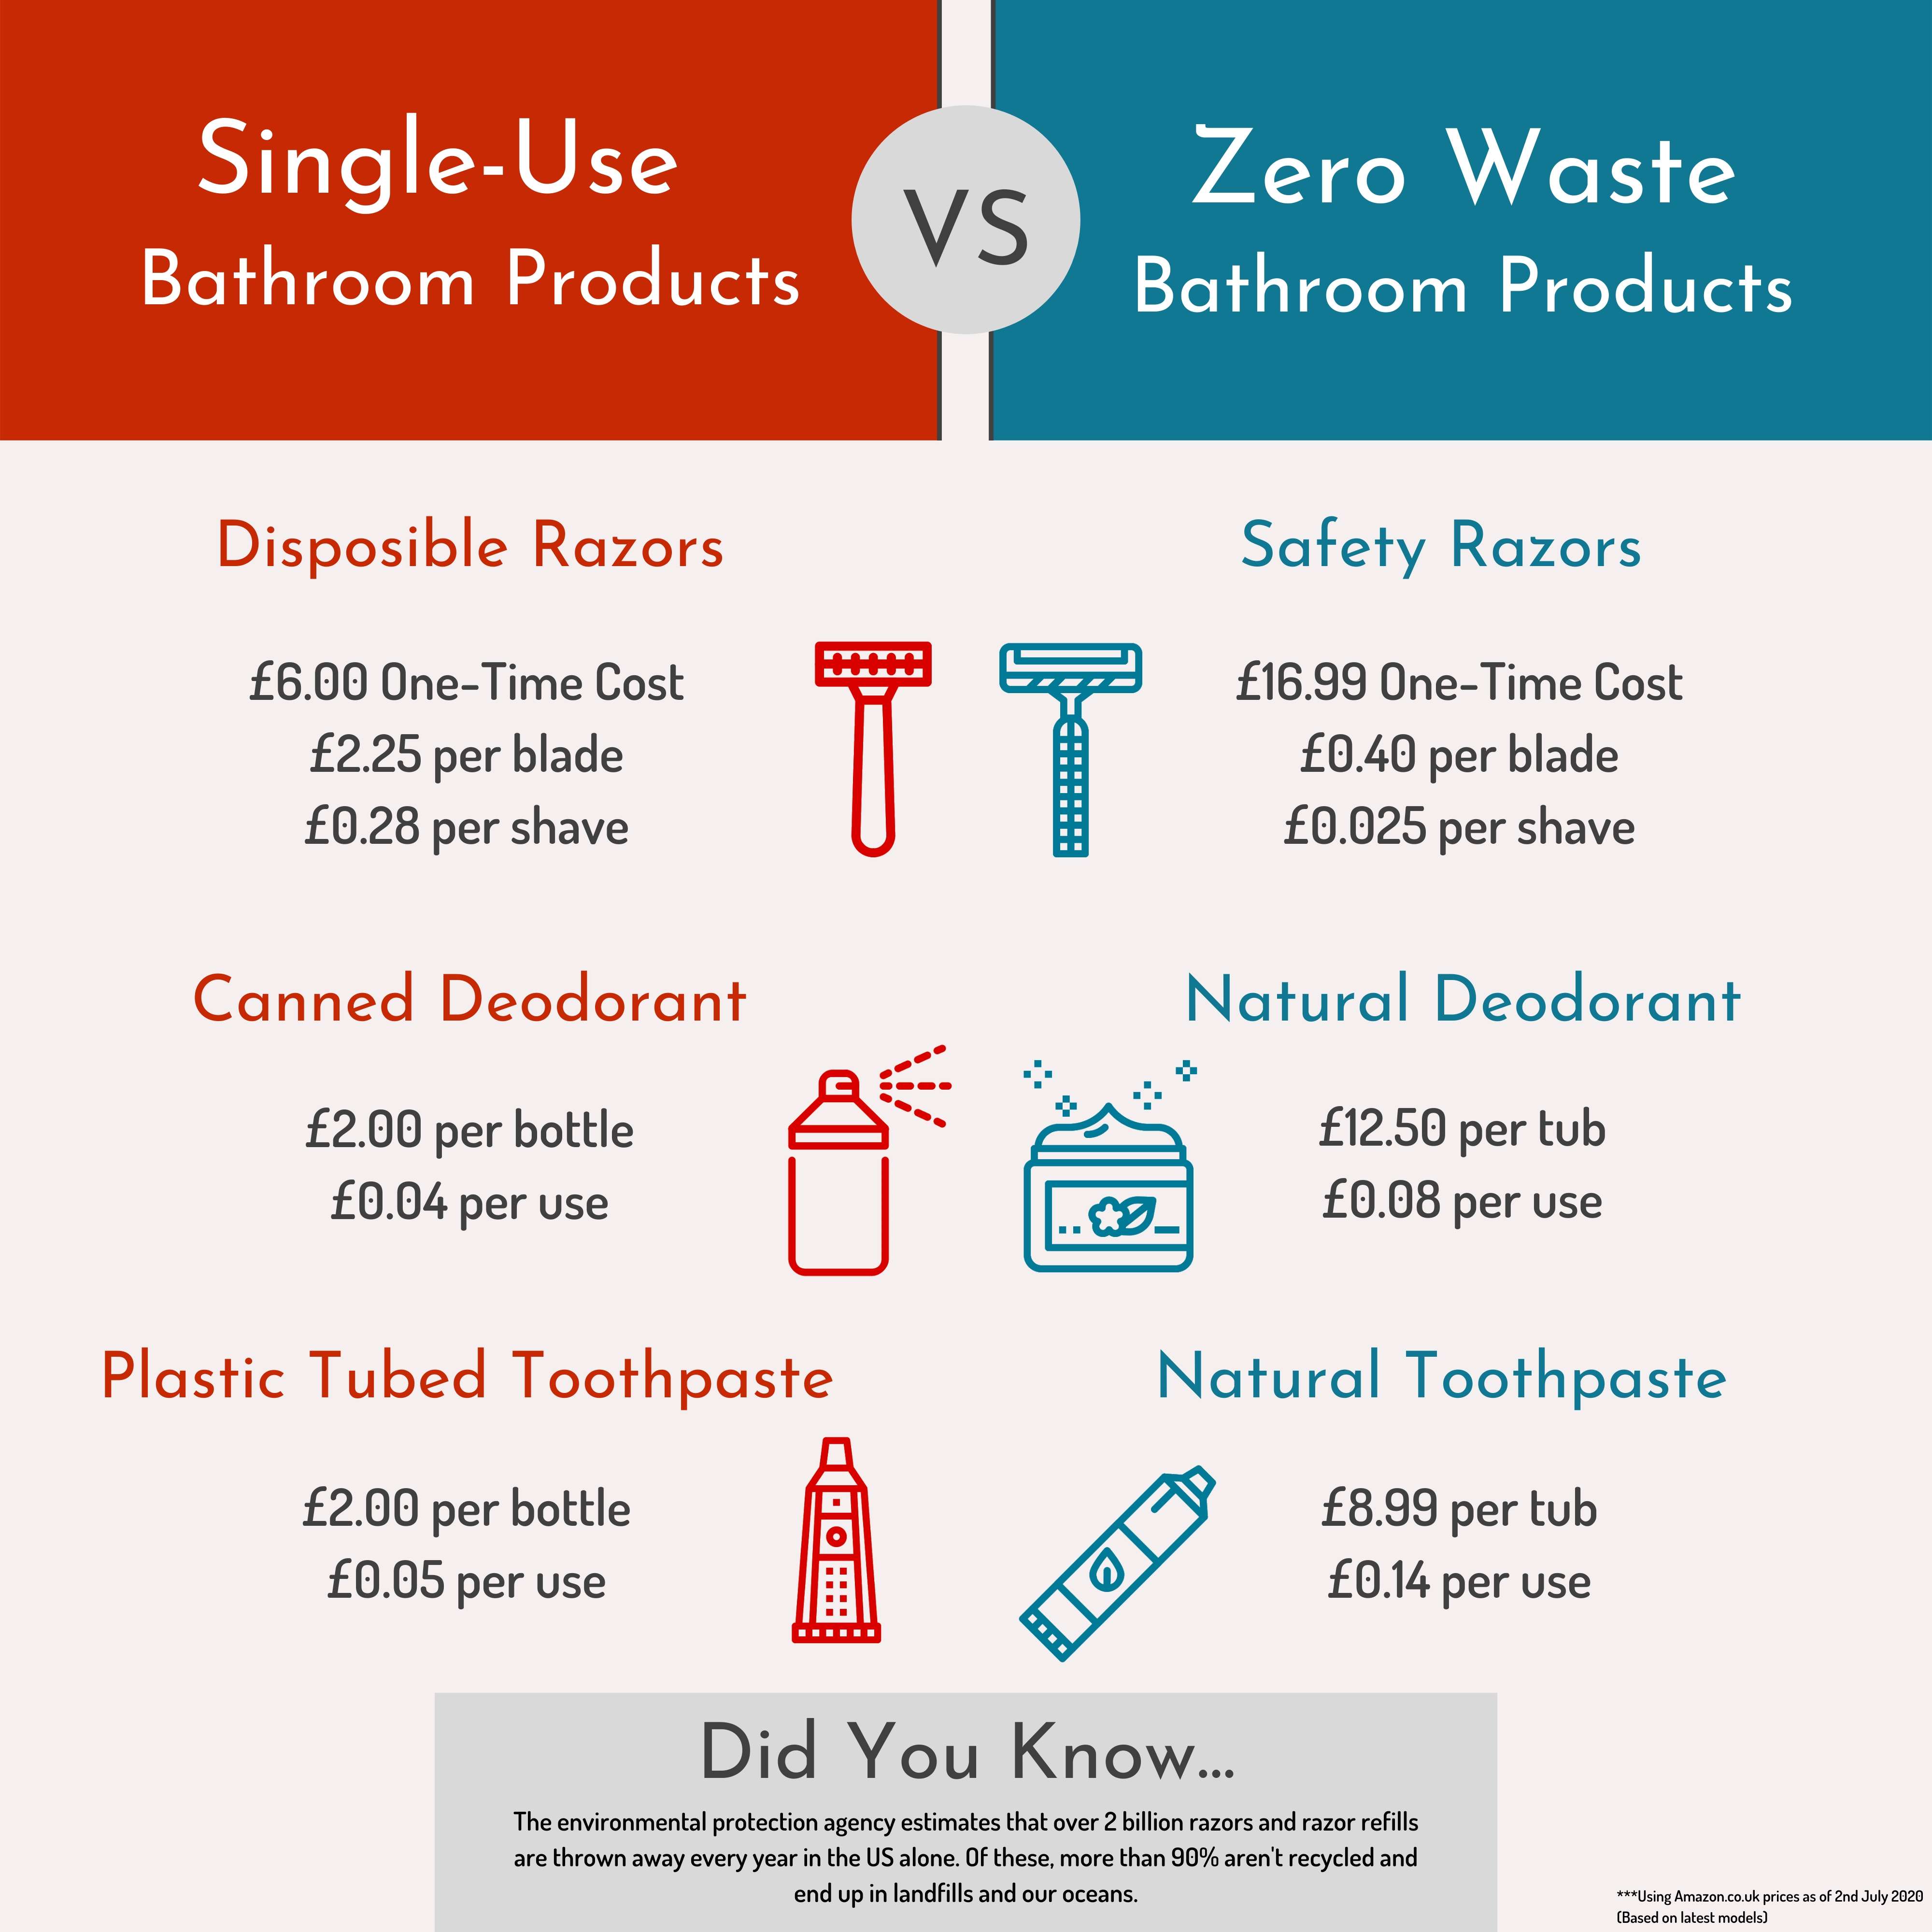 Are zero waste products cheaper